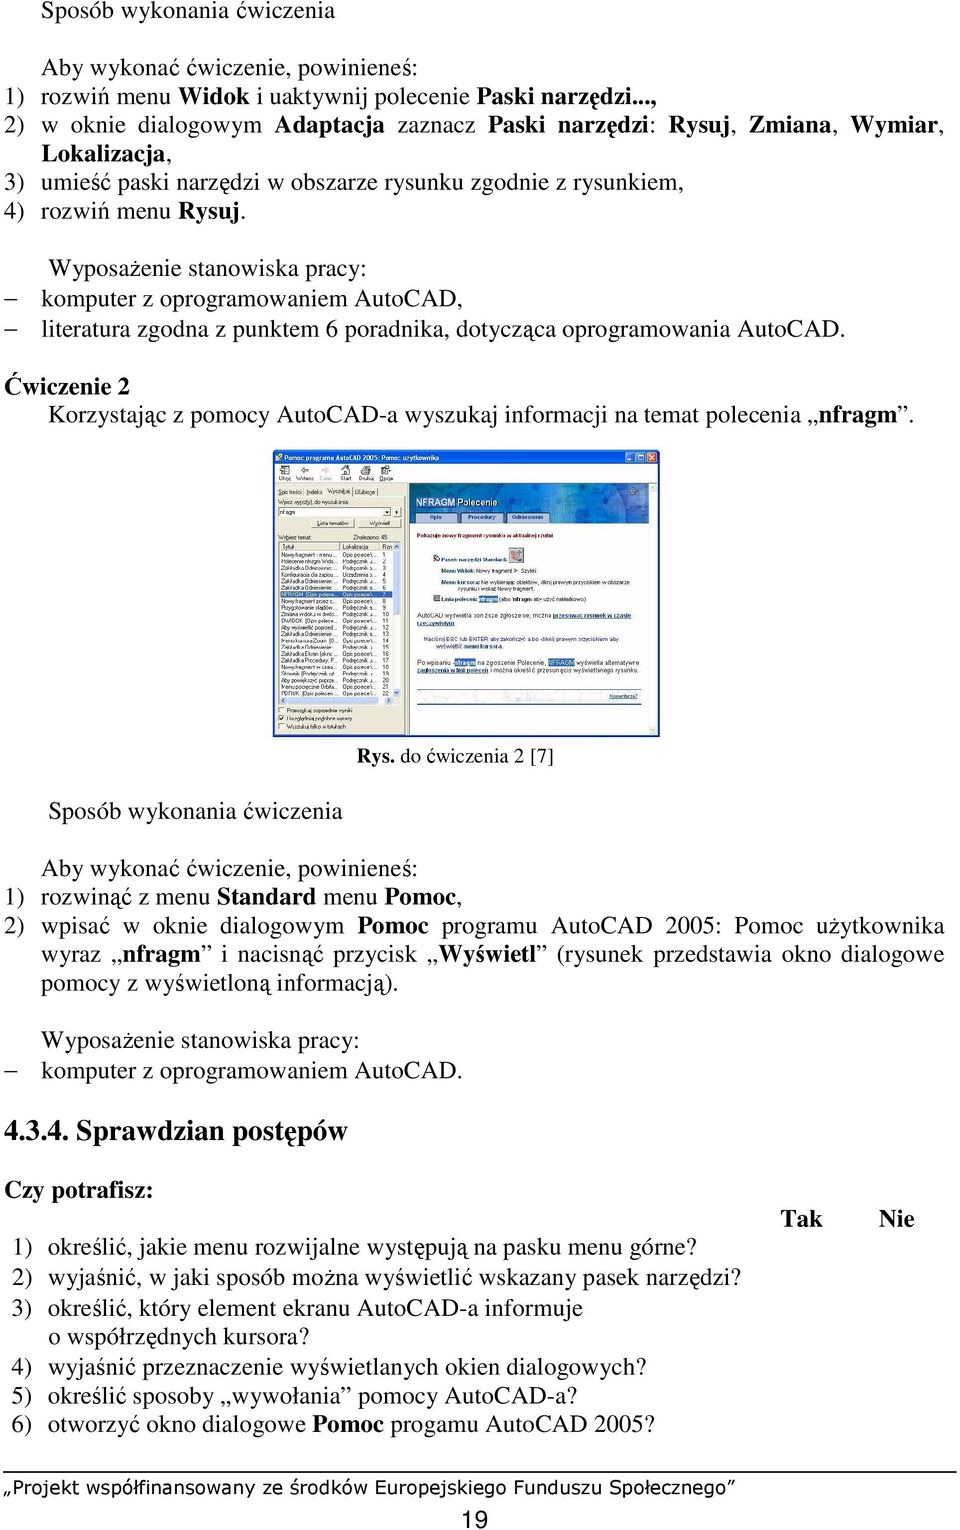 WyposaŜenie stanowiska pracy: komputer z oprogramowaniem AutoCAD, literatura zgodna z punktem 6 poradnika, dotycząca oprogramowania AutoCAD.